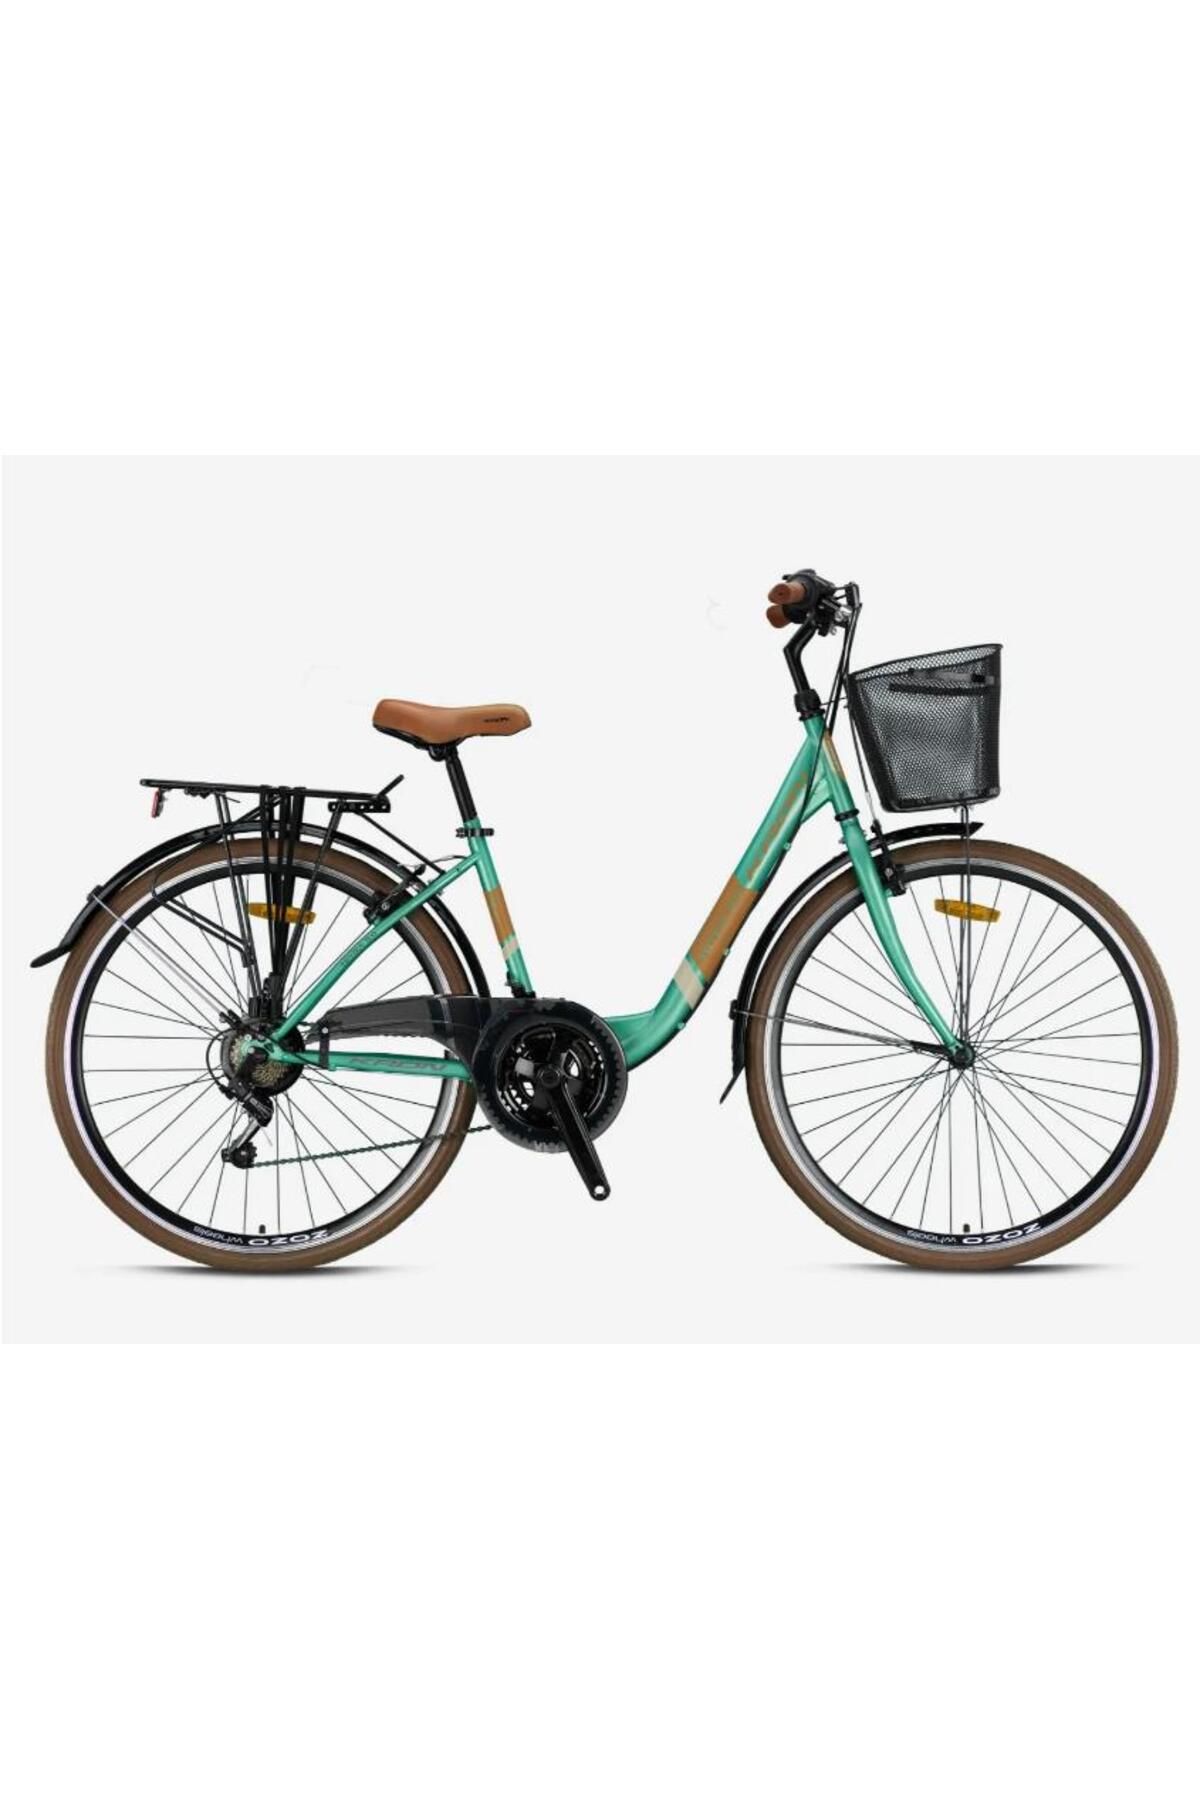 Kron TETRA 3.0 - 28 Jant City Bike - 15' - 21 Vites - V.B. - Mint Yeşili-Kahverengi/Bej